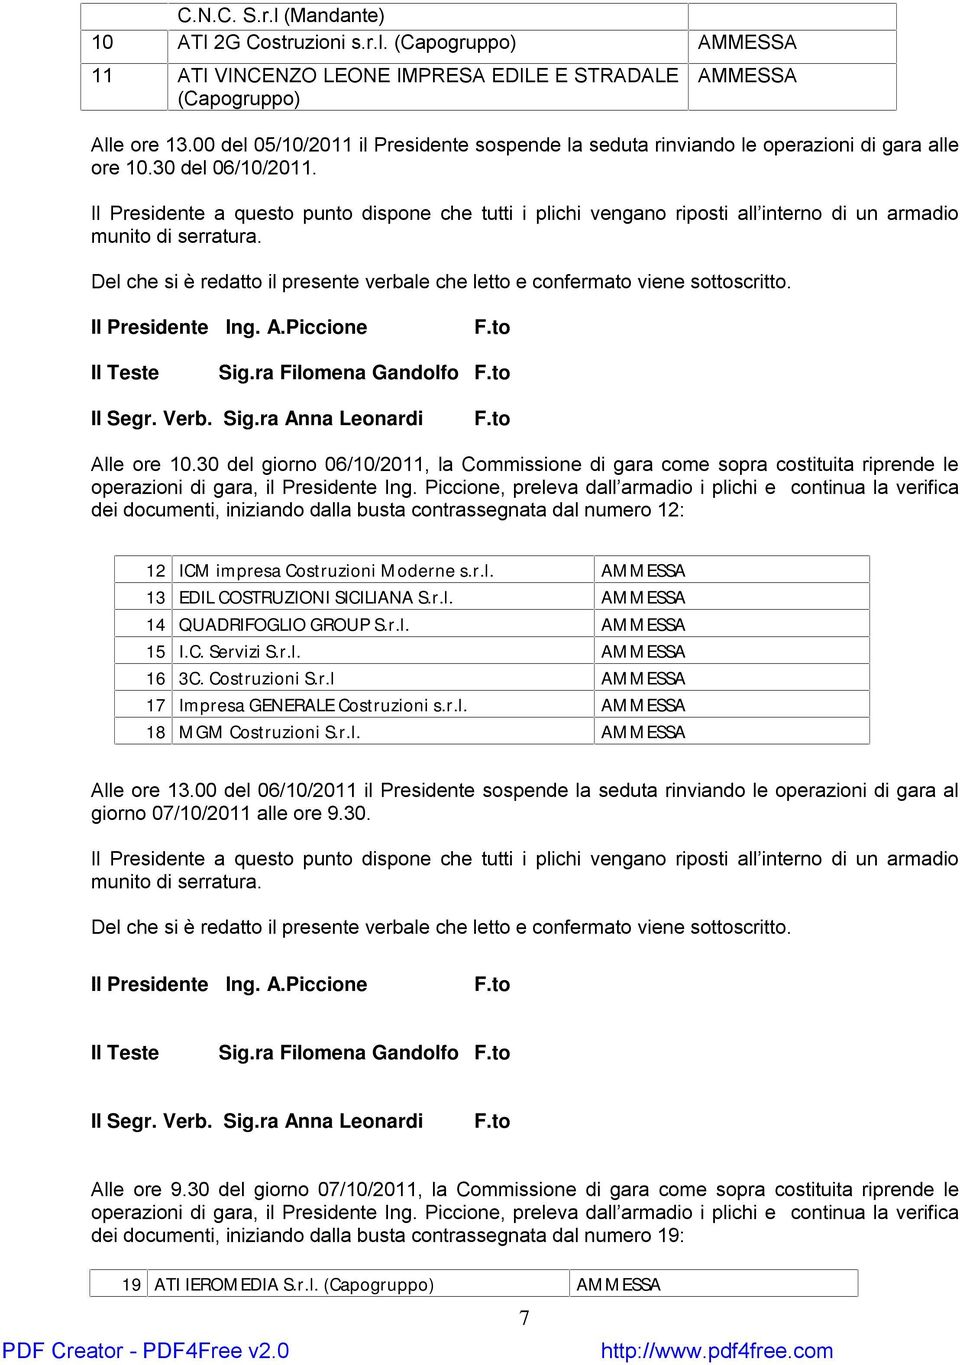 30 del giorno 06/10/2011, la Commissione di gara come sopra costituita riprende le dei documenti, iniziando dalla busta contrassegnata dal numero 12: 12 ICM impresa Costruzioni Moderne s.r.l. AMMESSA 13 EDIL COSTRUZIONI SICILIANA S.